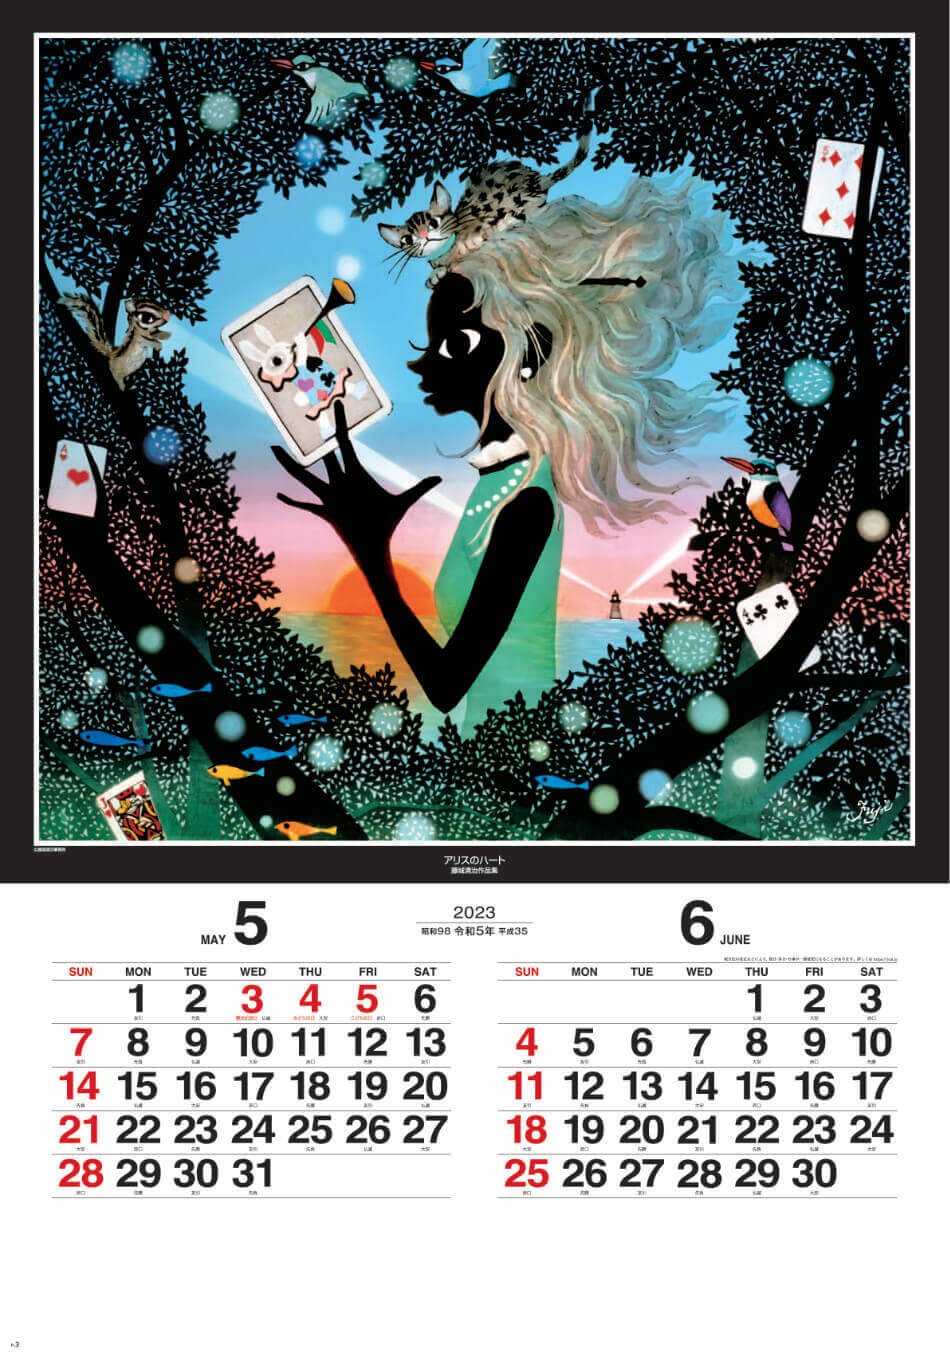 5/6月 アリスのハート 遠い日の風景から(影絵) 藤城清治 (フィルムカレンダー) 2023年カレンダーの画像